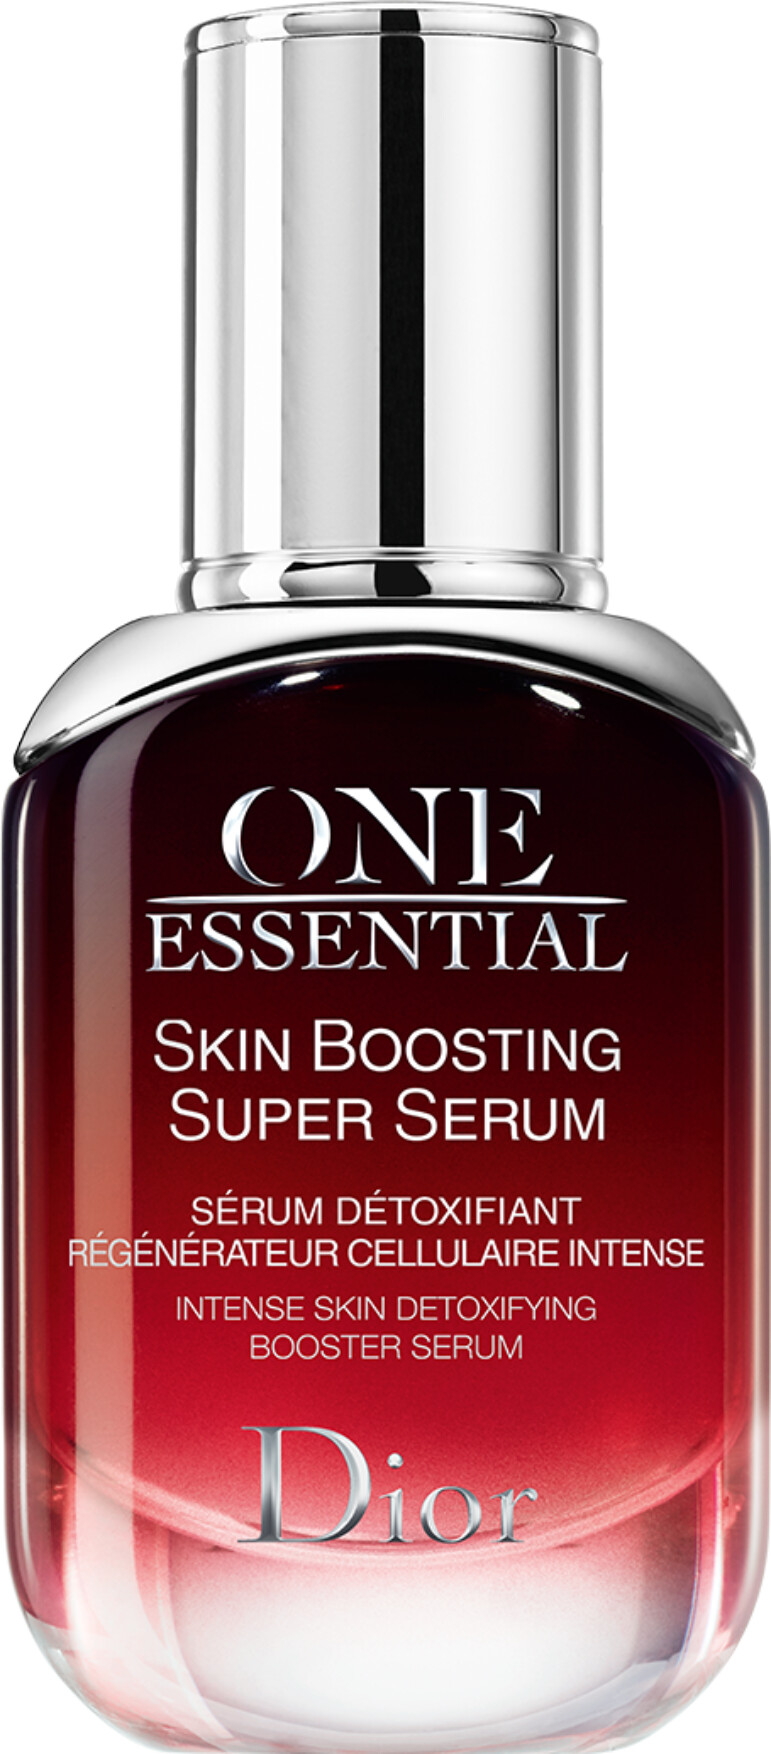 christian dior one essential skin boosting super serum